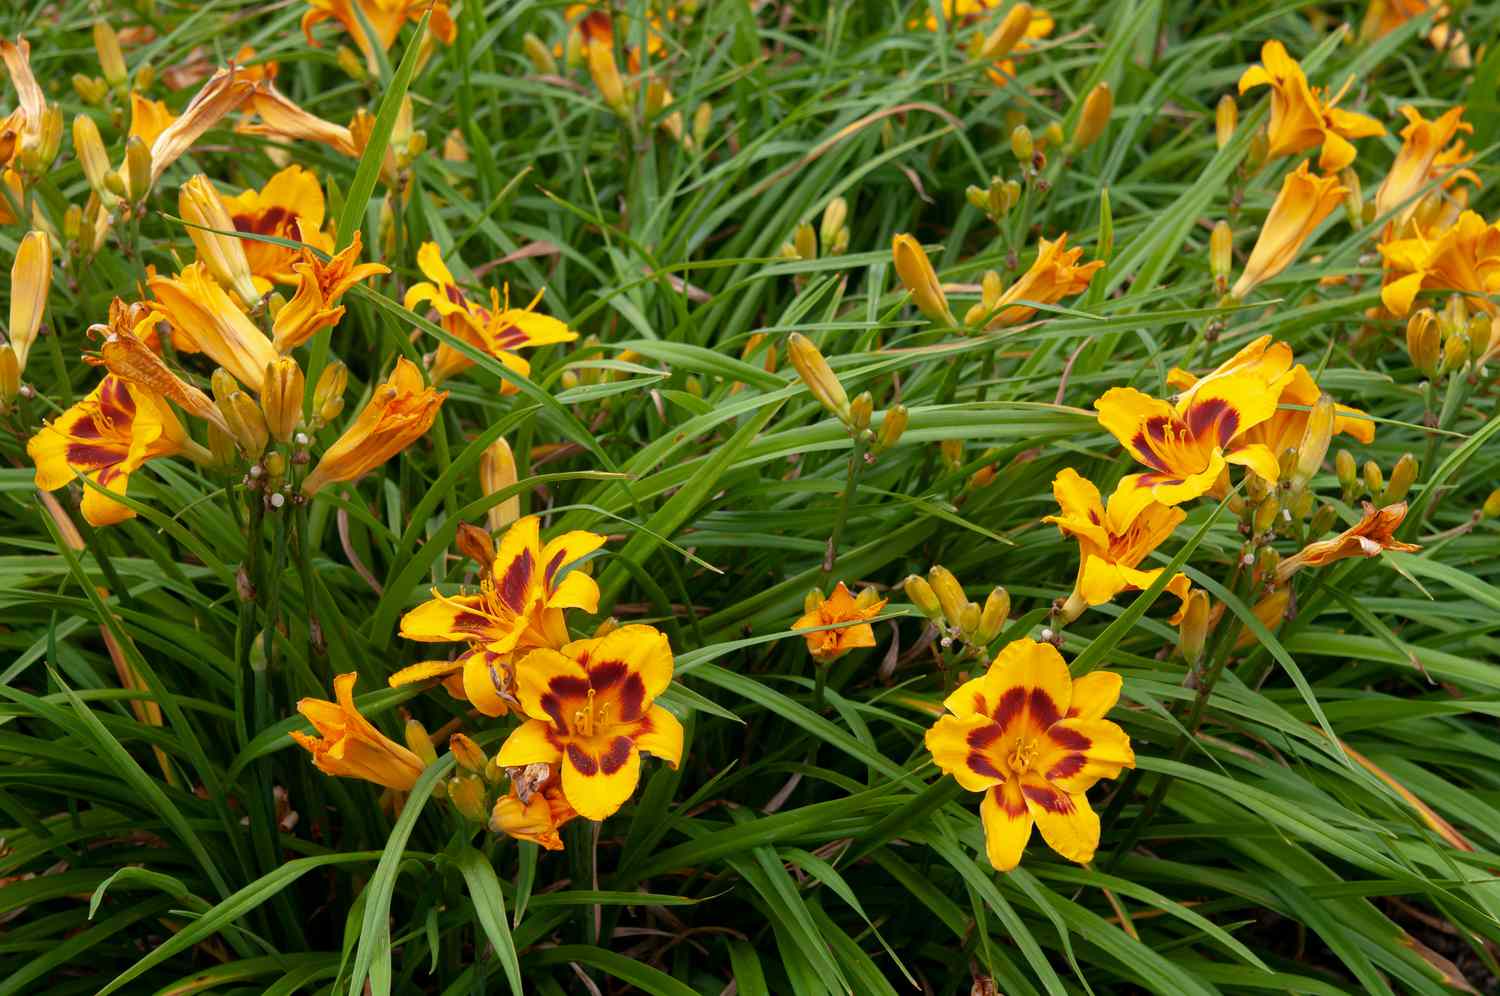 Les hémérocalles Black-eyed susan avec de longues feuilles et des fleurs jaunes et rouges